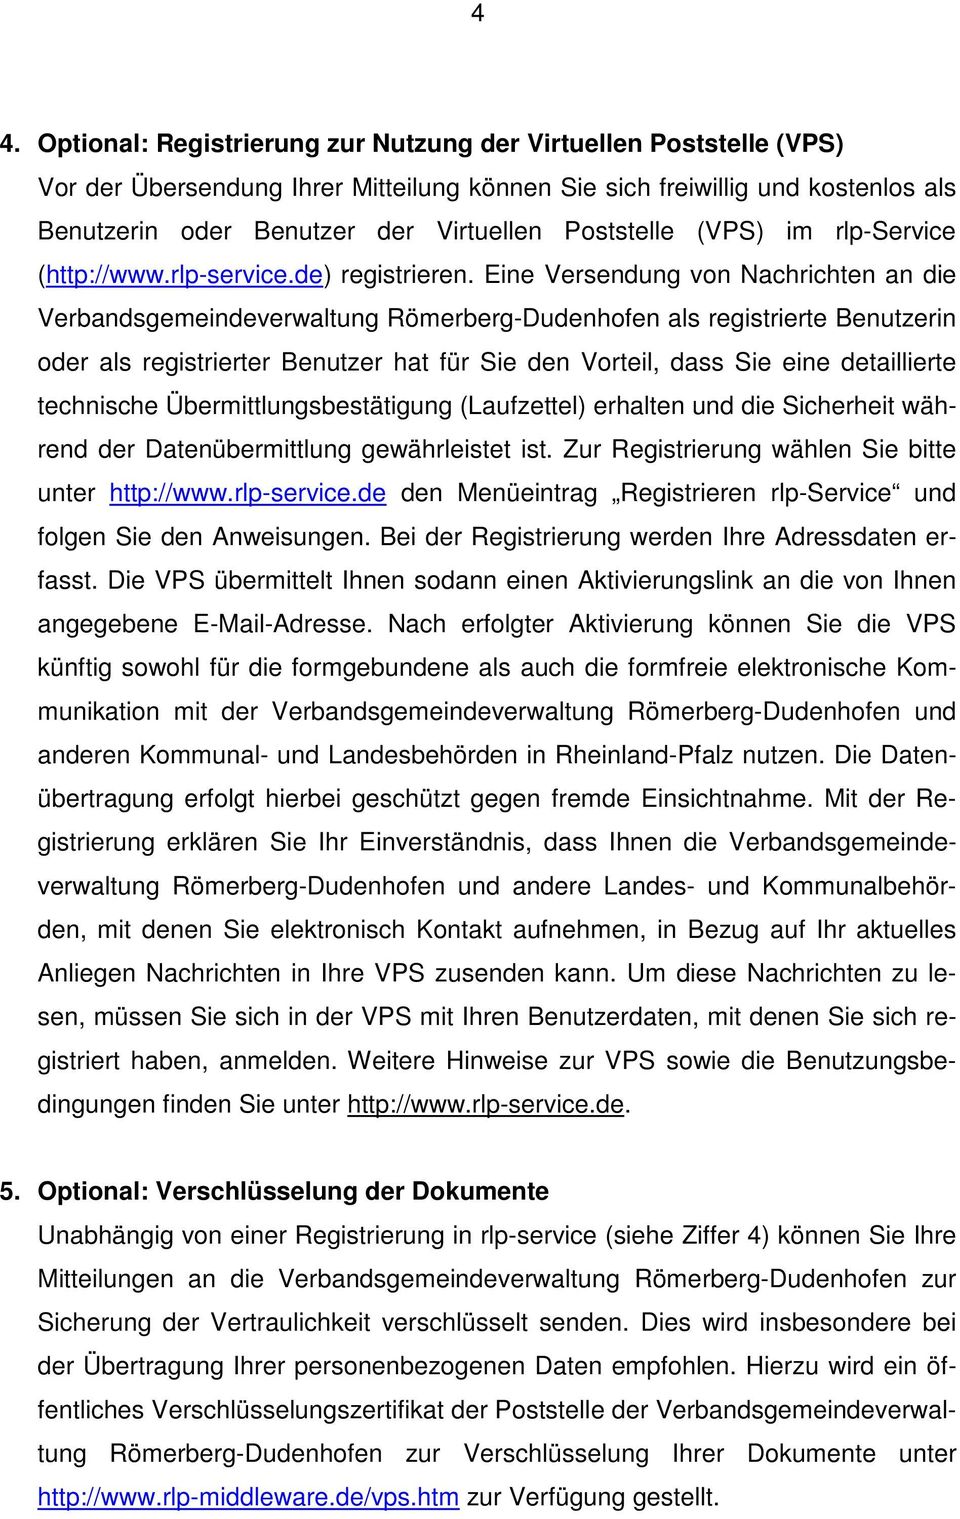 Eine Versendung von Nachrichten an die Verbandsgemeindeverwaltung Römerberg-Dudenhofen als registrierte Benutzerin oder als registrierter Benutzer hat für Sie den Vorteil, dass Sie eine detaillierte